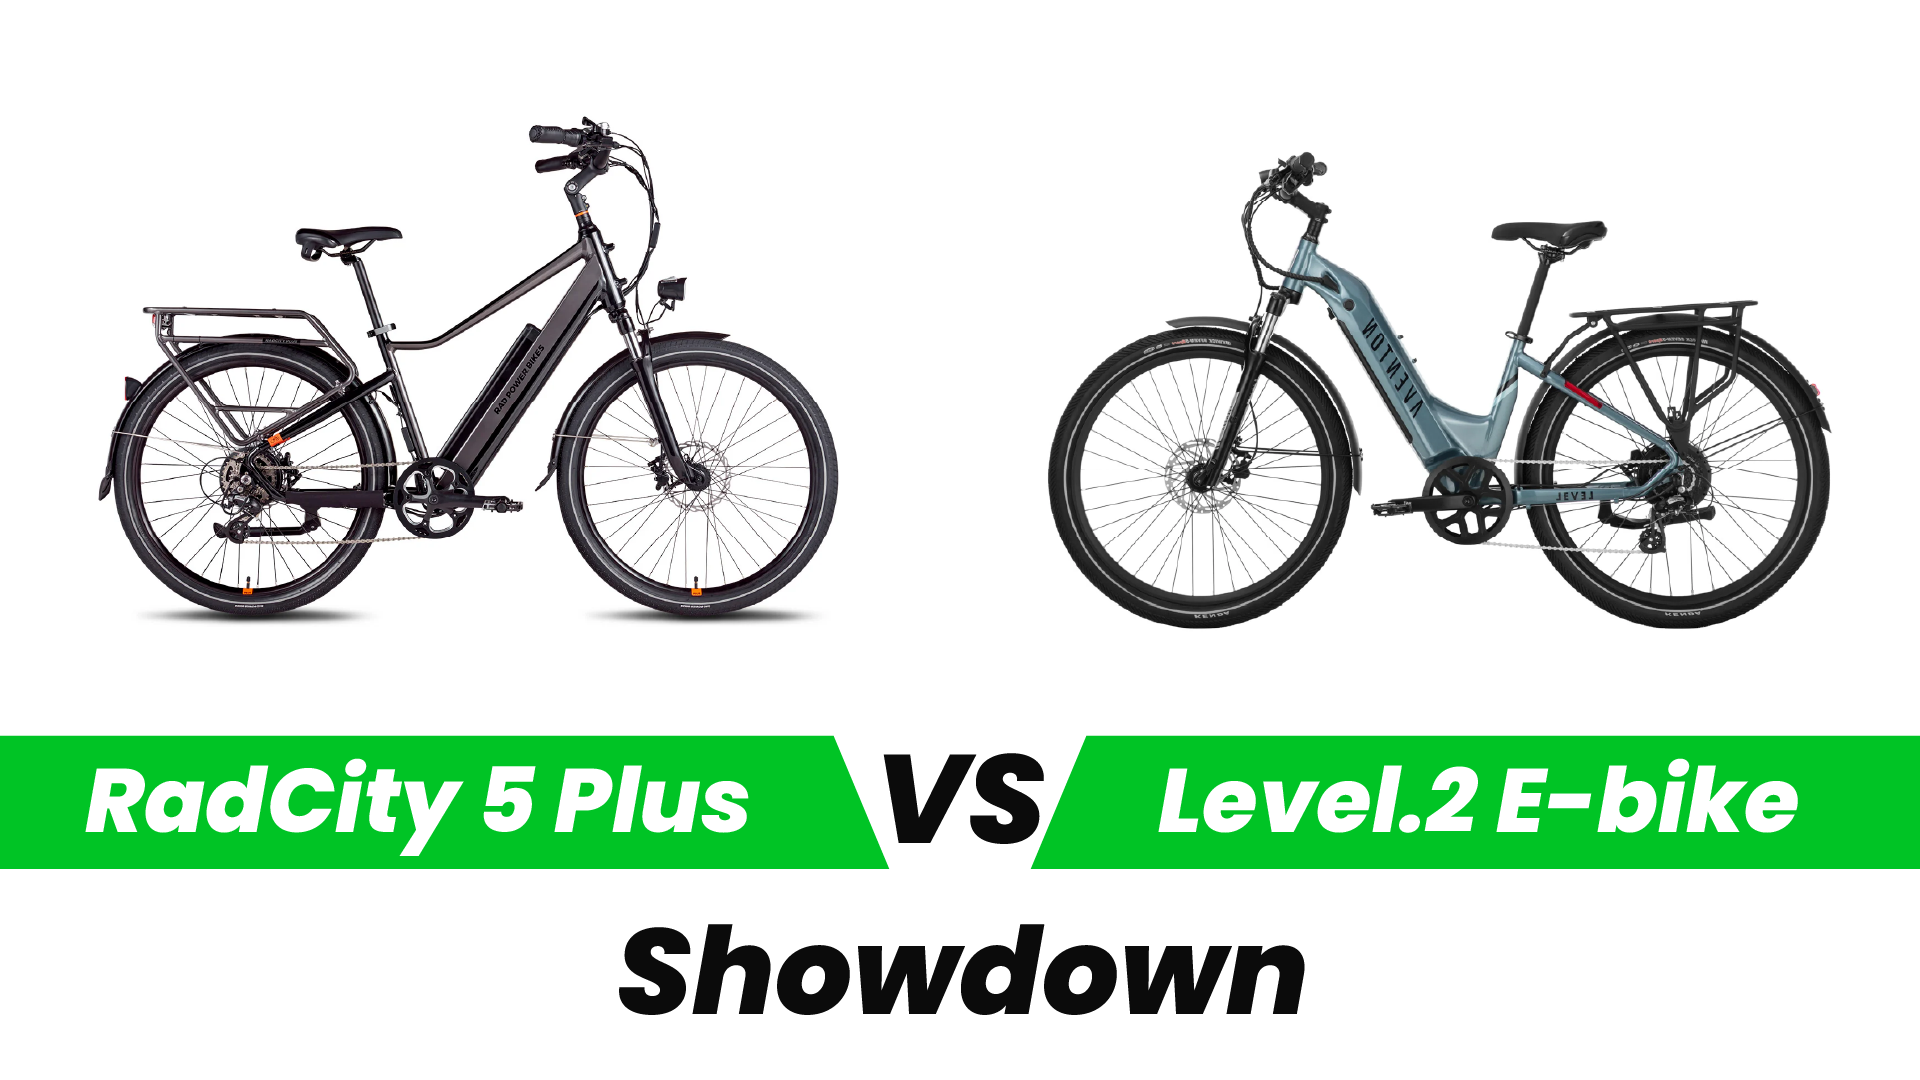 RadCity 5 Plus vs. Level.2 E-bike Showdown